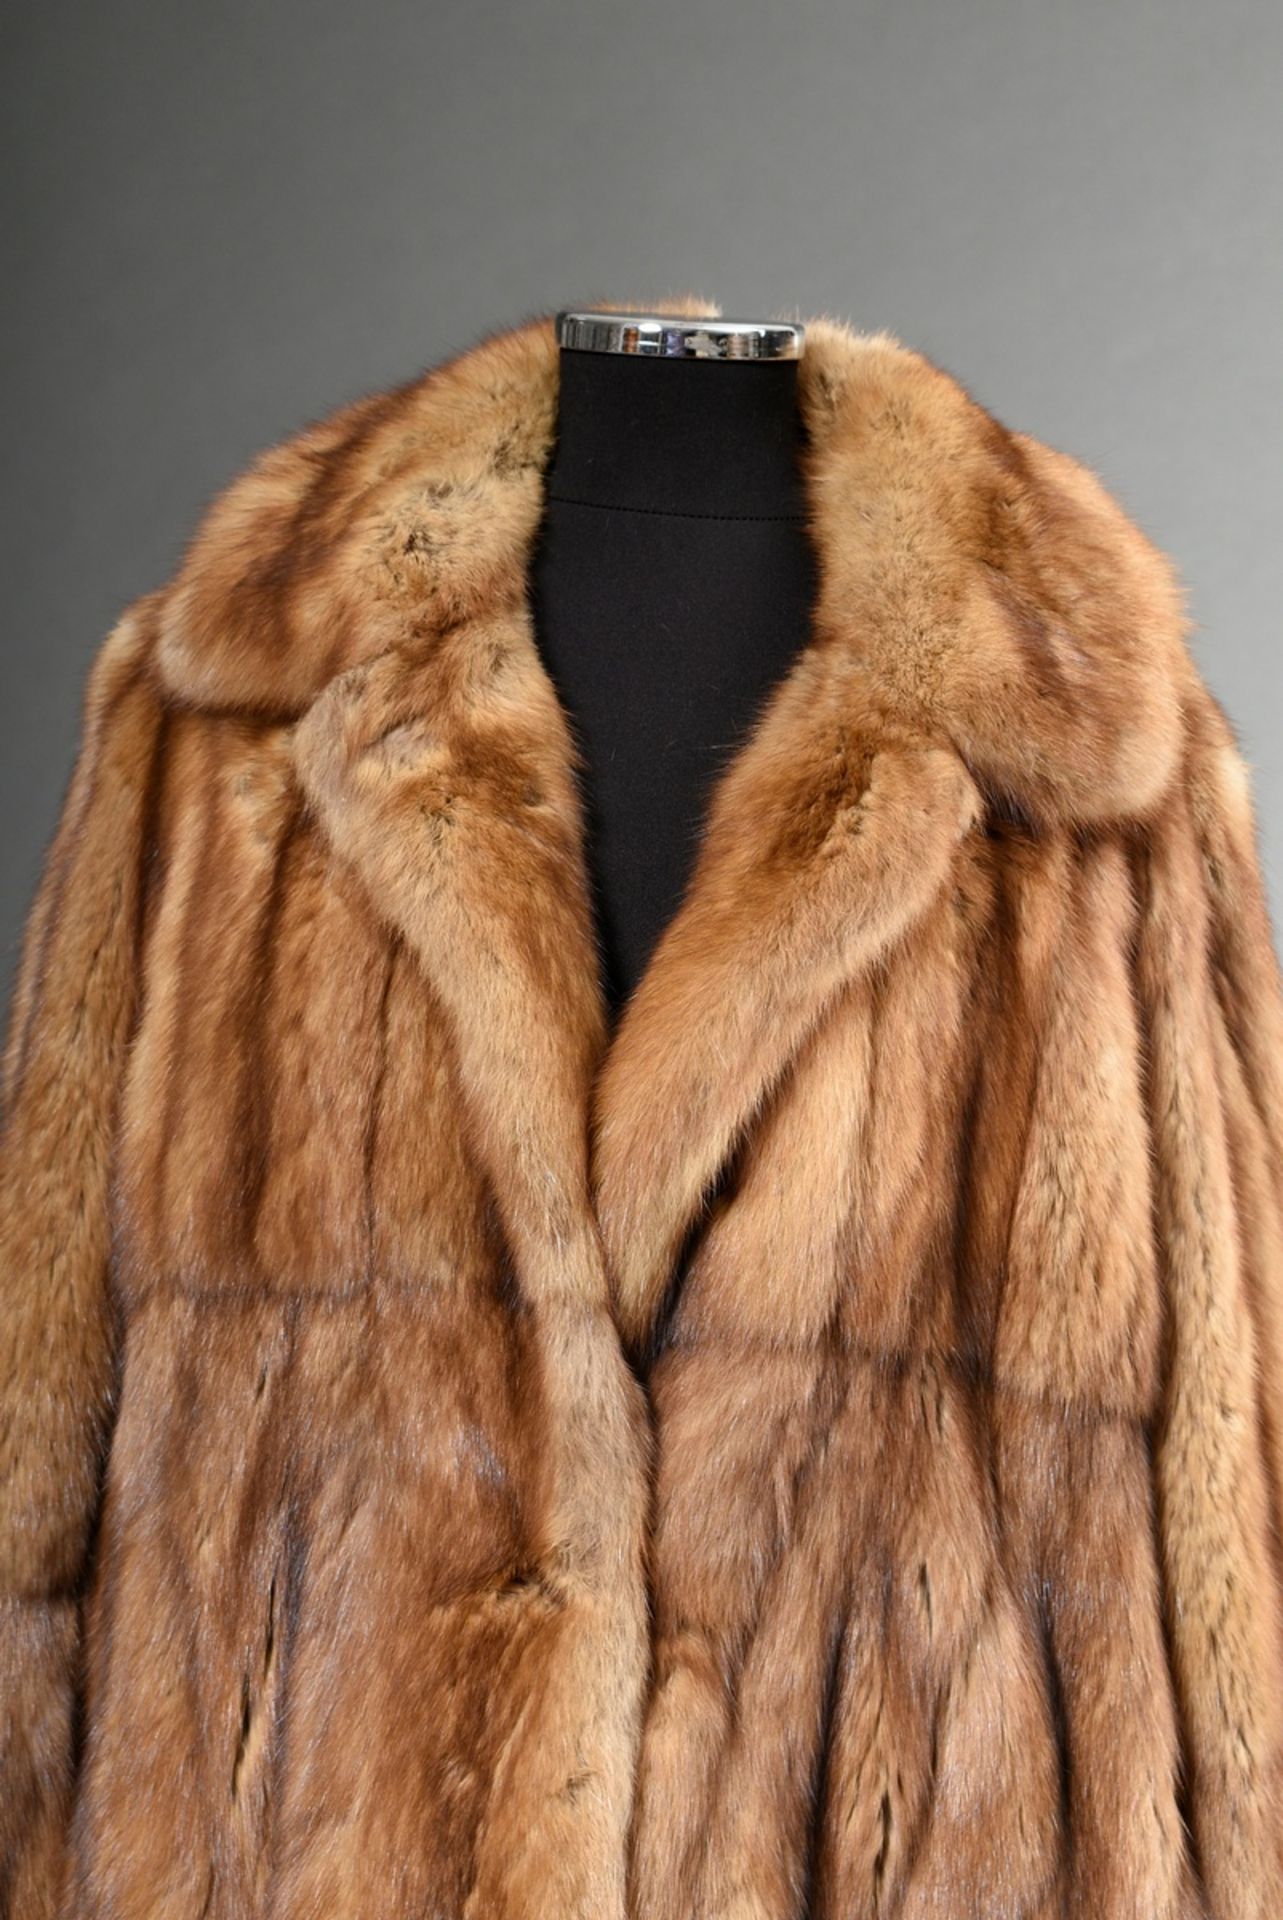 Kanadische Goldzobel Jacke aus längs verarbeiteten Fellen, Bonnie Models Nr. 161940, 2004 bei Unger - Bild 2 aus 5